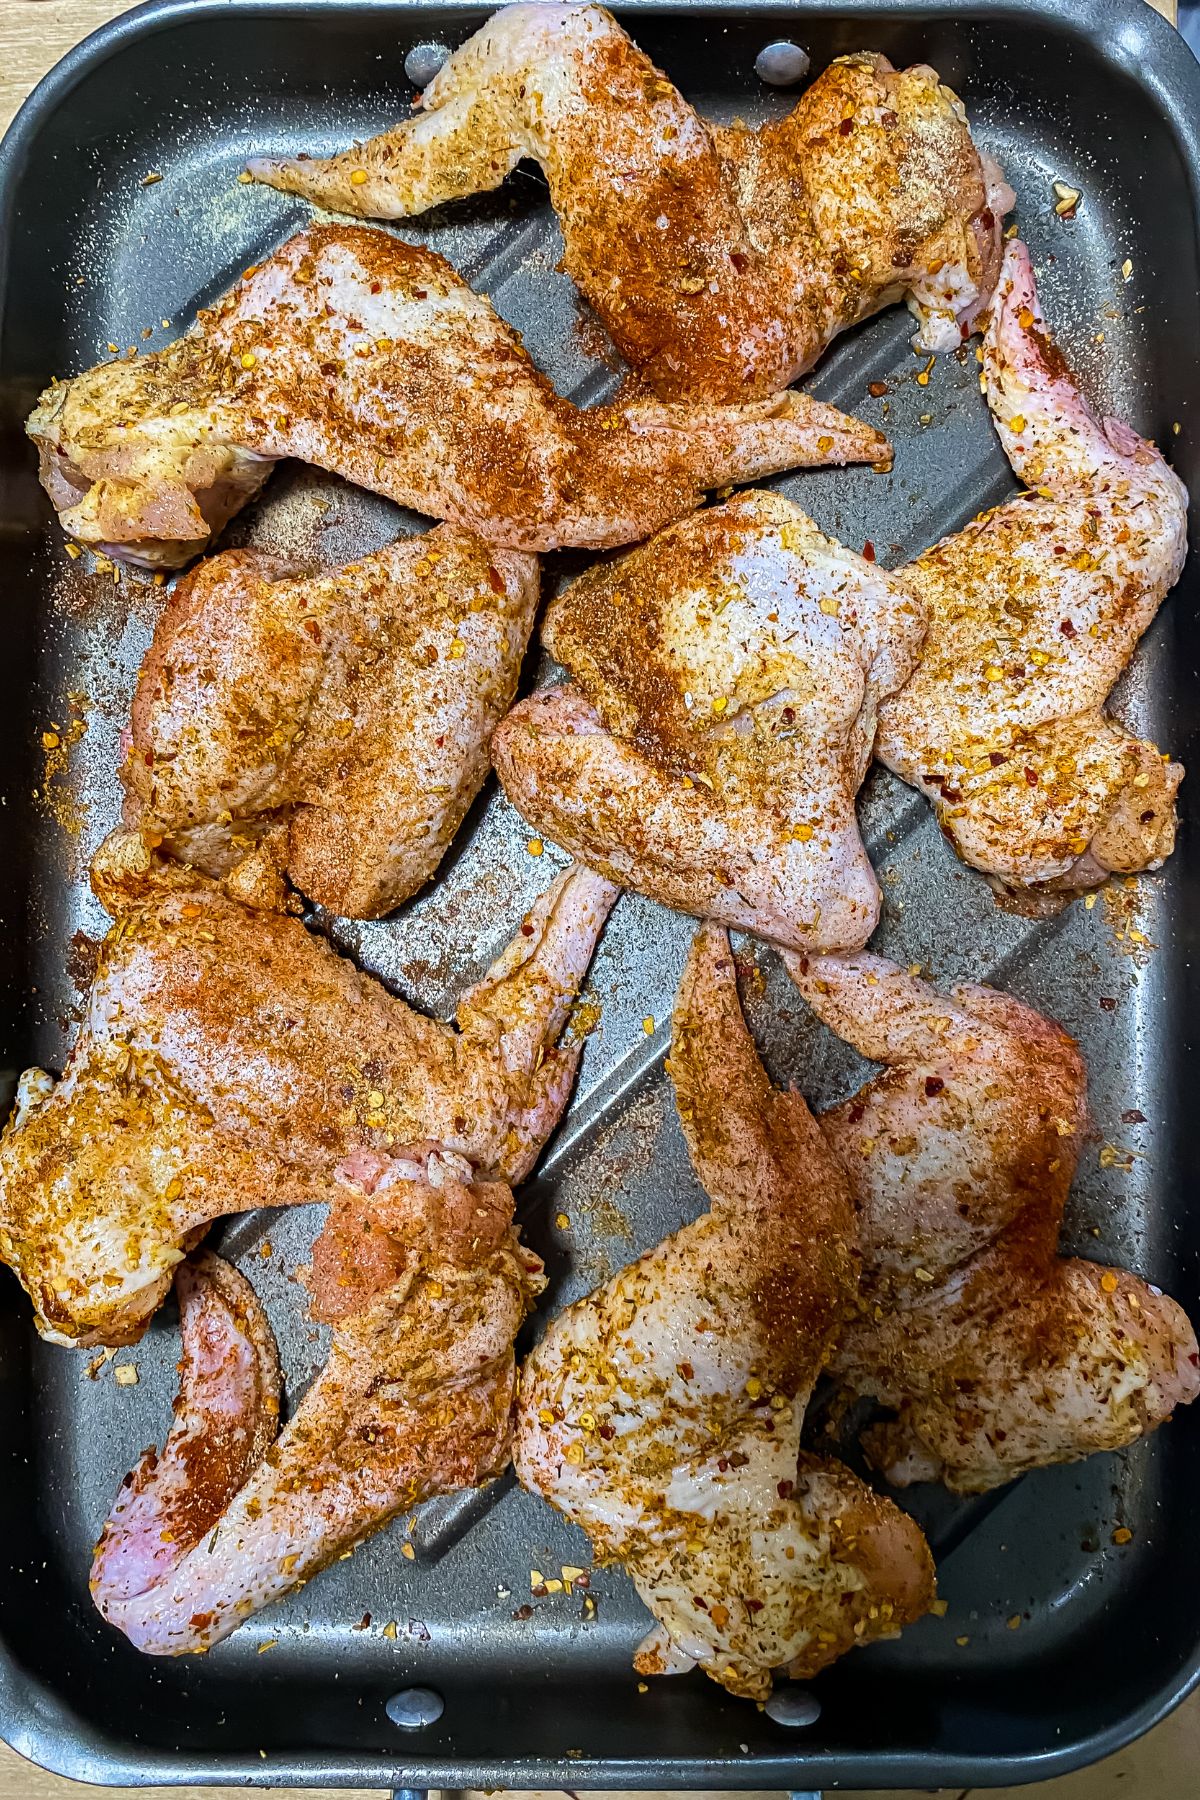 raw seasoned chicken wings on a baking sheet